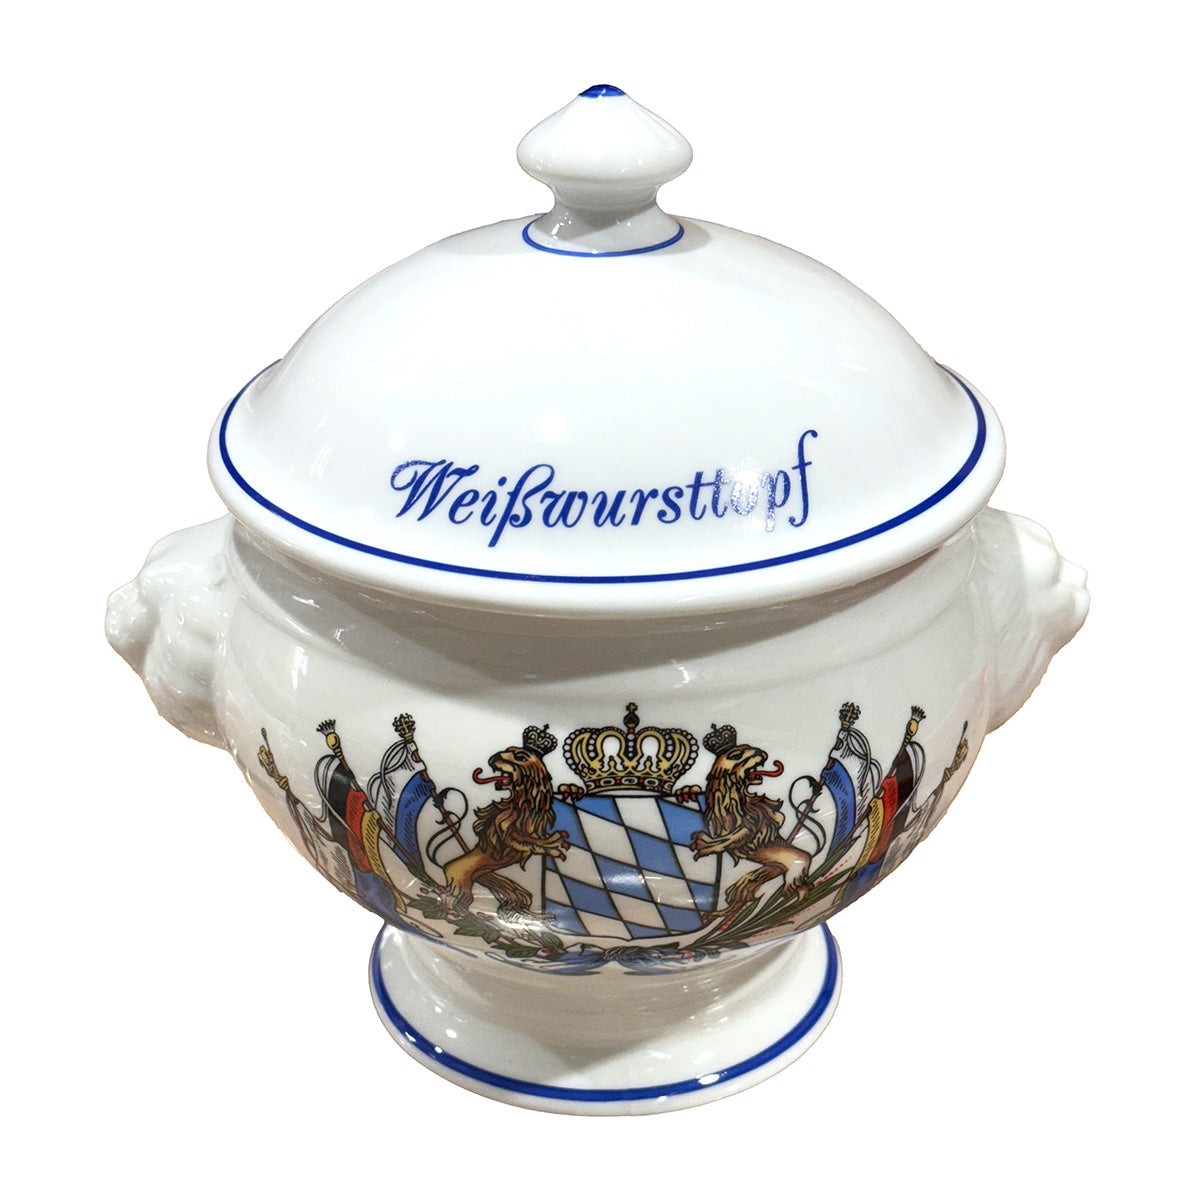 Bayerischer Weißwurst-Topf oder Weißwurst-Terrine mit Wappen 1l